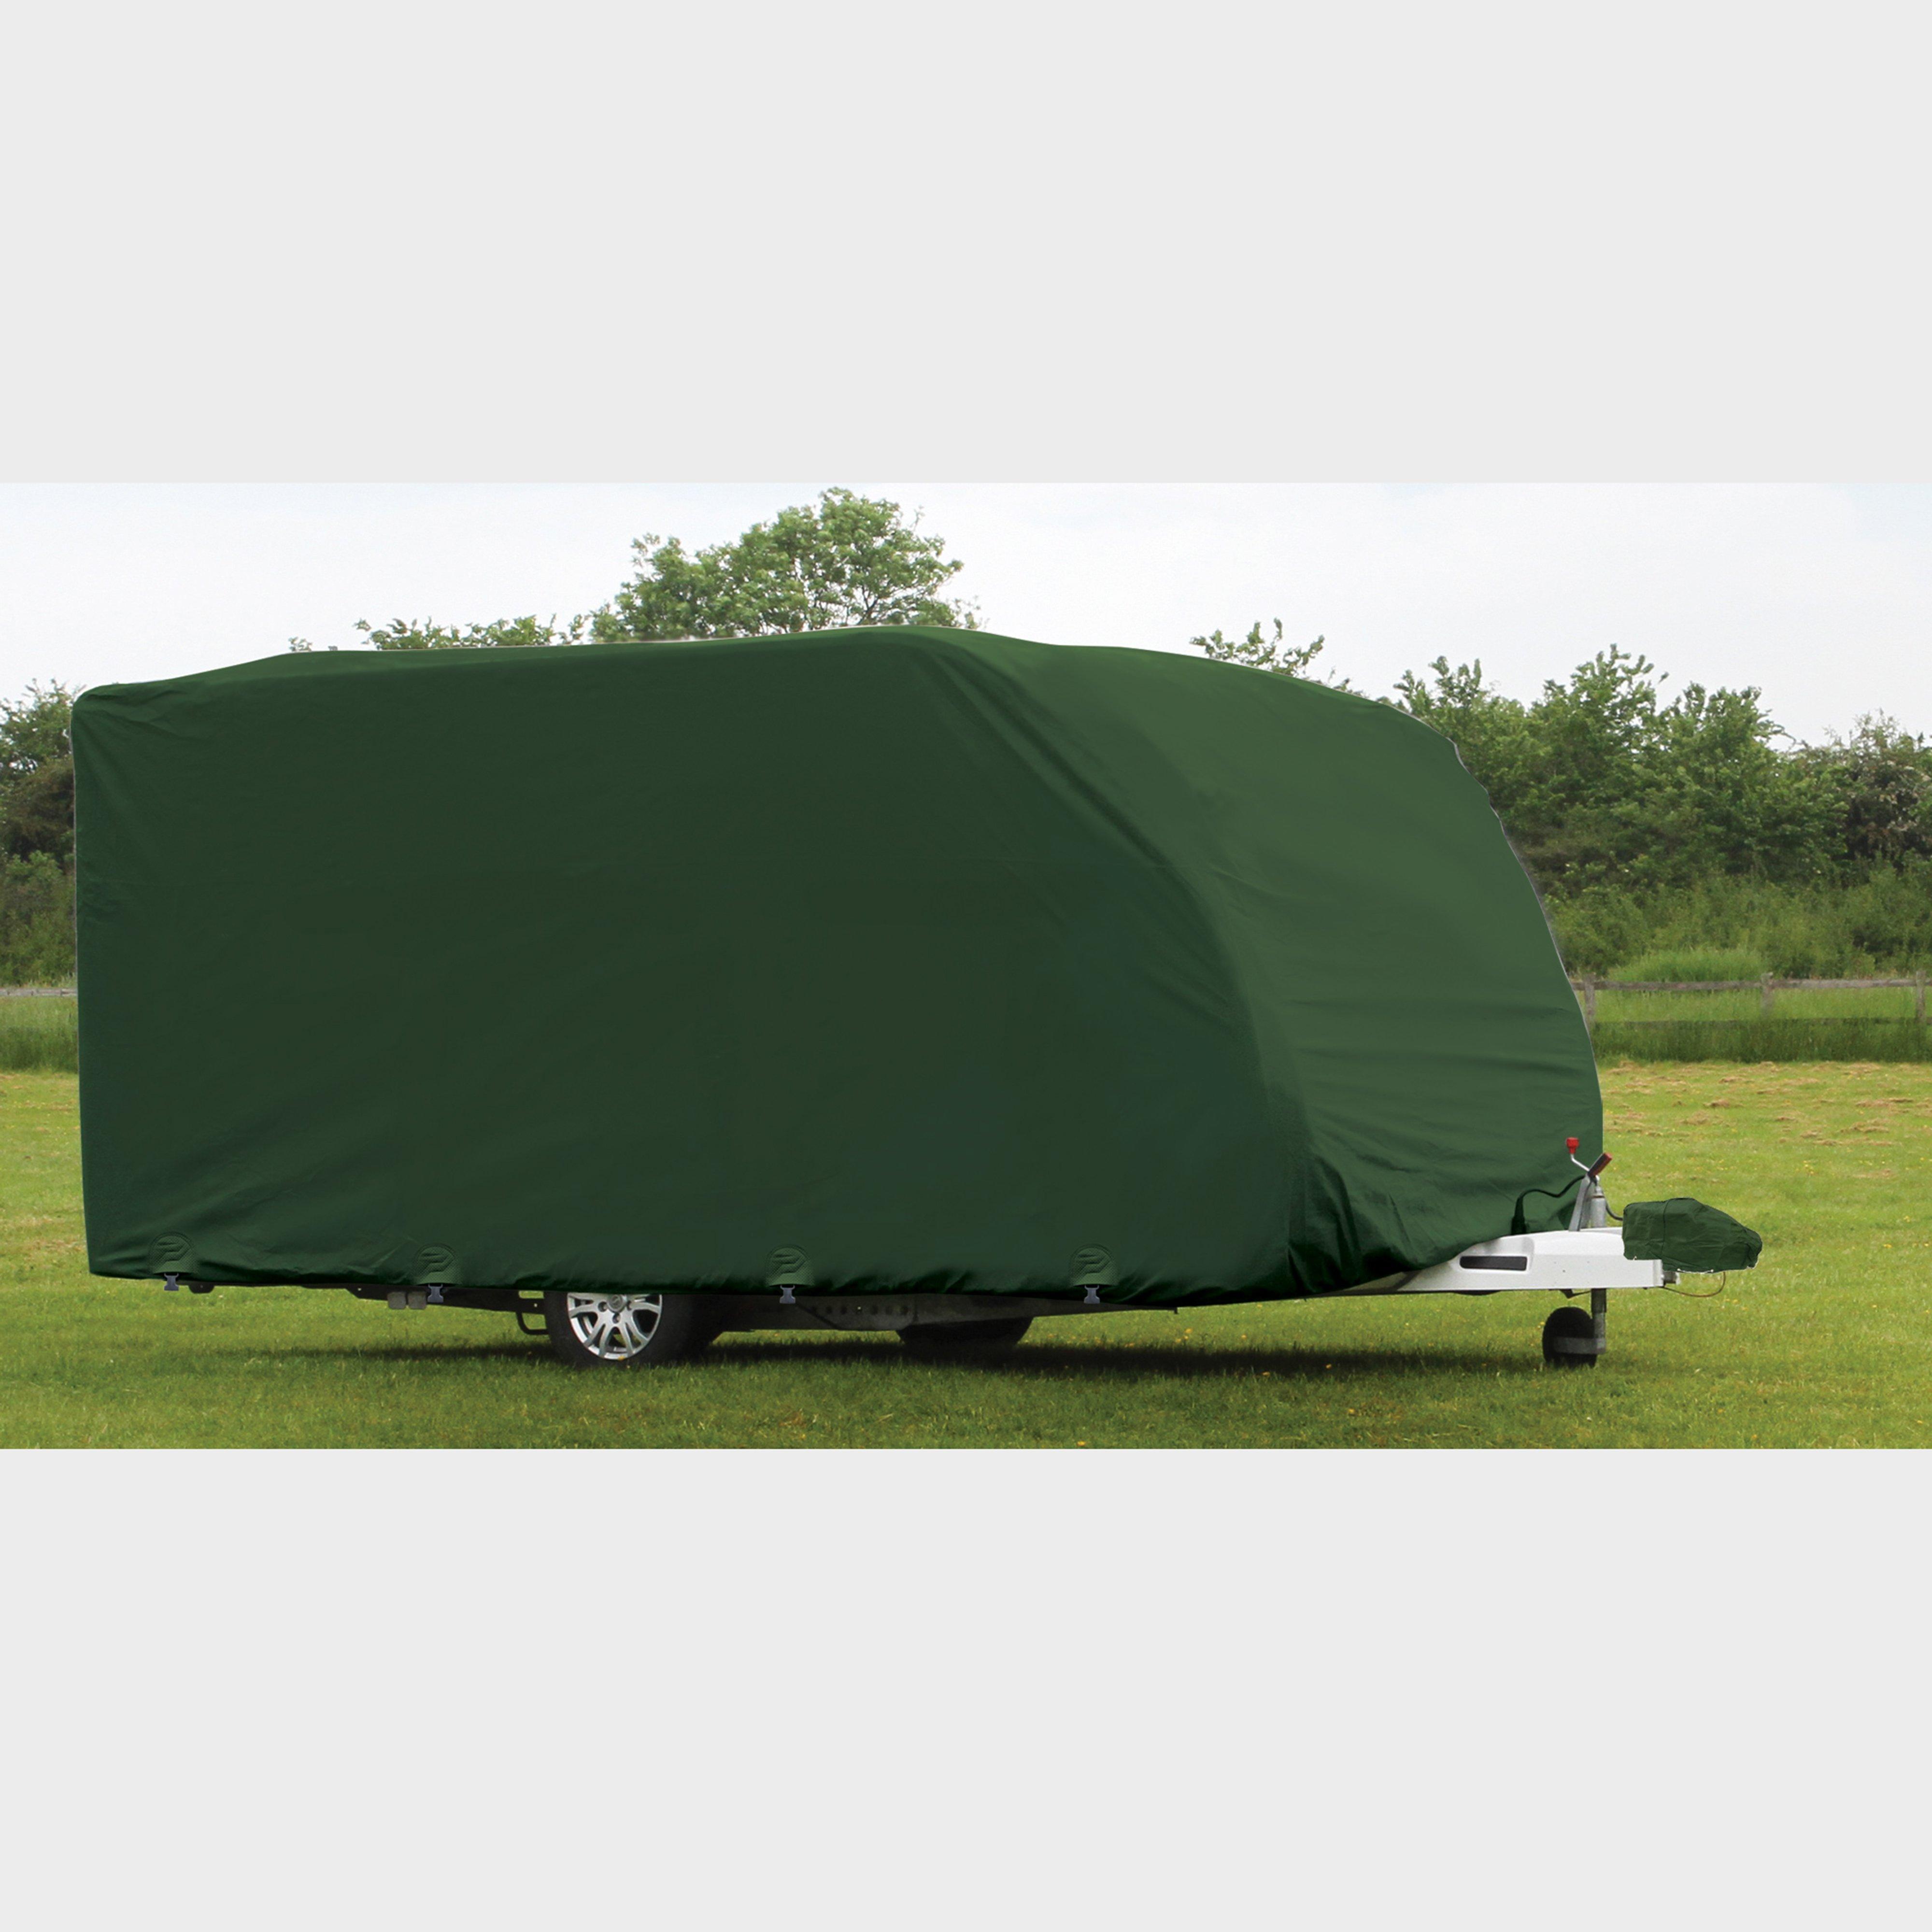 Quest Caravan Cover Pro Large (510-570cm) Review